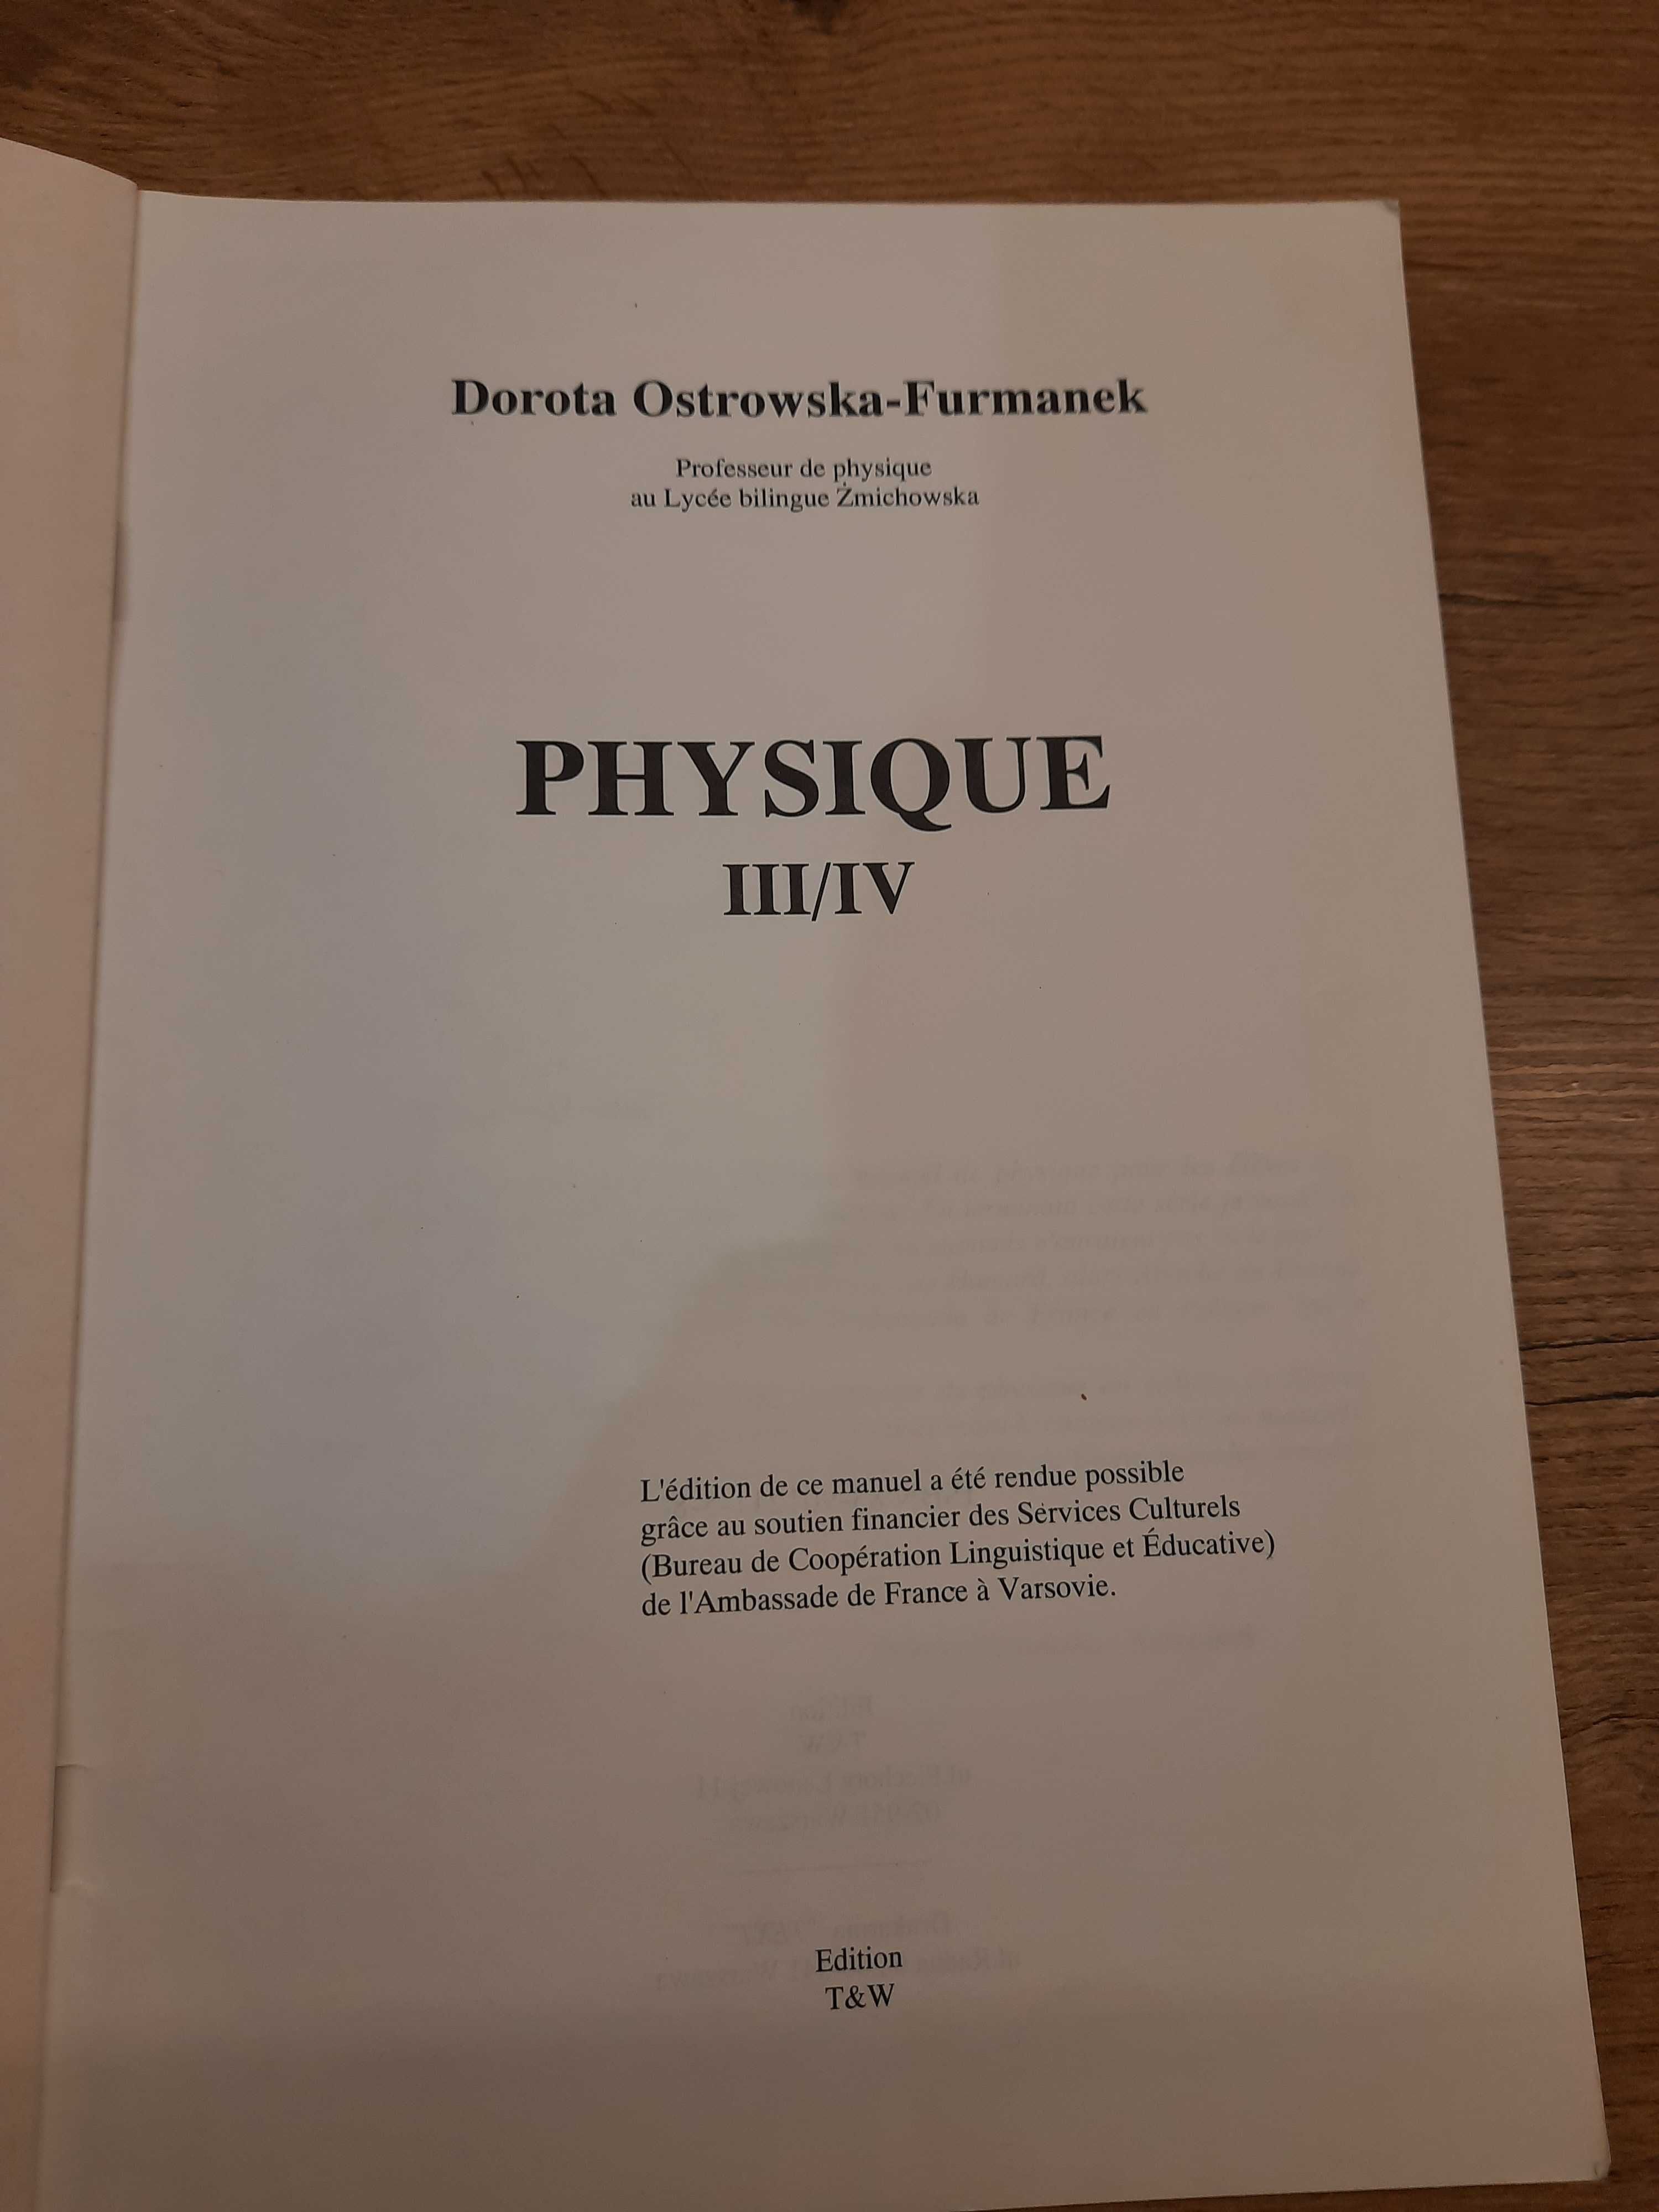 Podręcznik do fizyki w języku francuskim (poziom liceum)